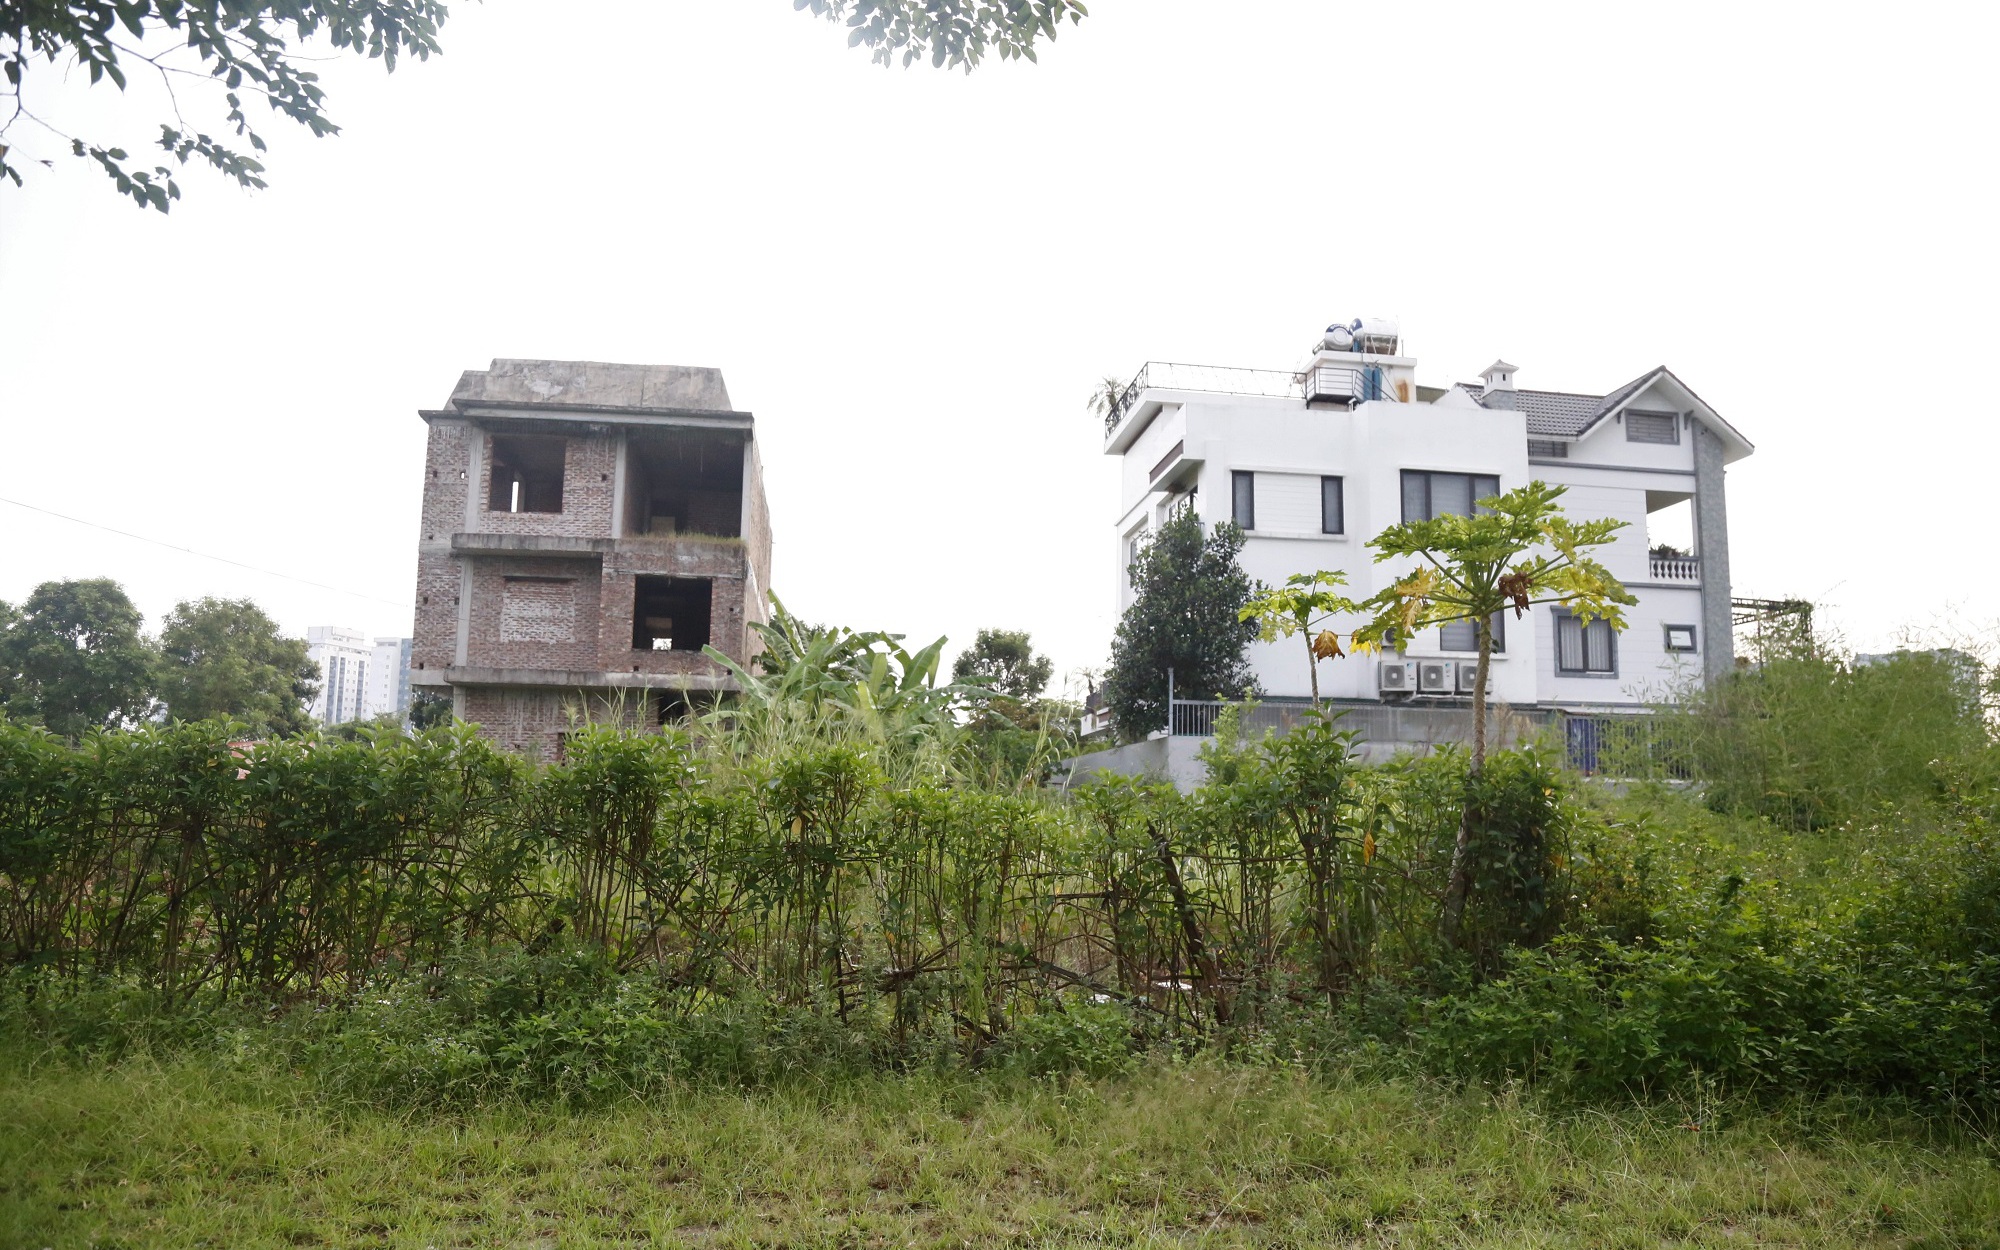 Hà Nội: Dự án khu đô thị Thanh Hà Cienco 5 tạm dừng điều chỉnh pháp lý